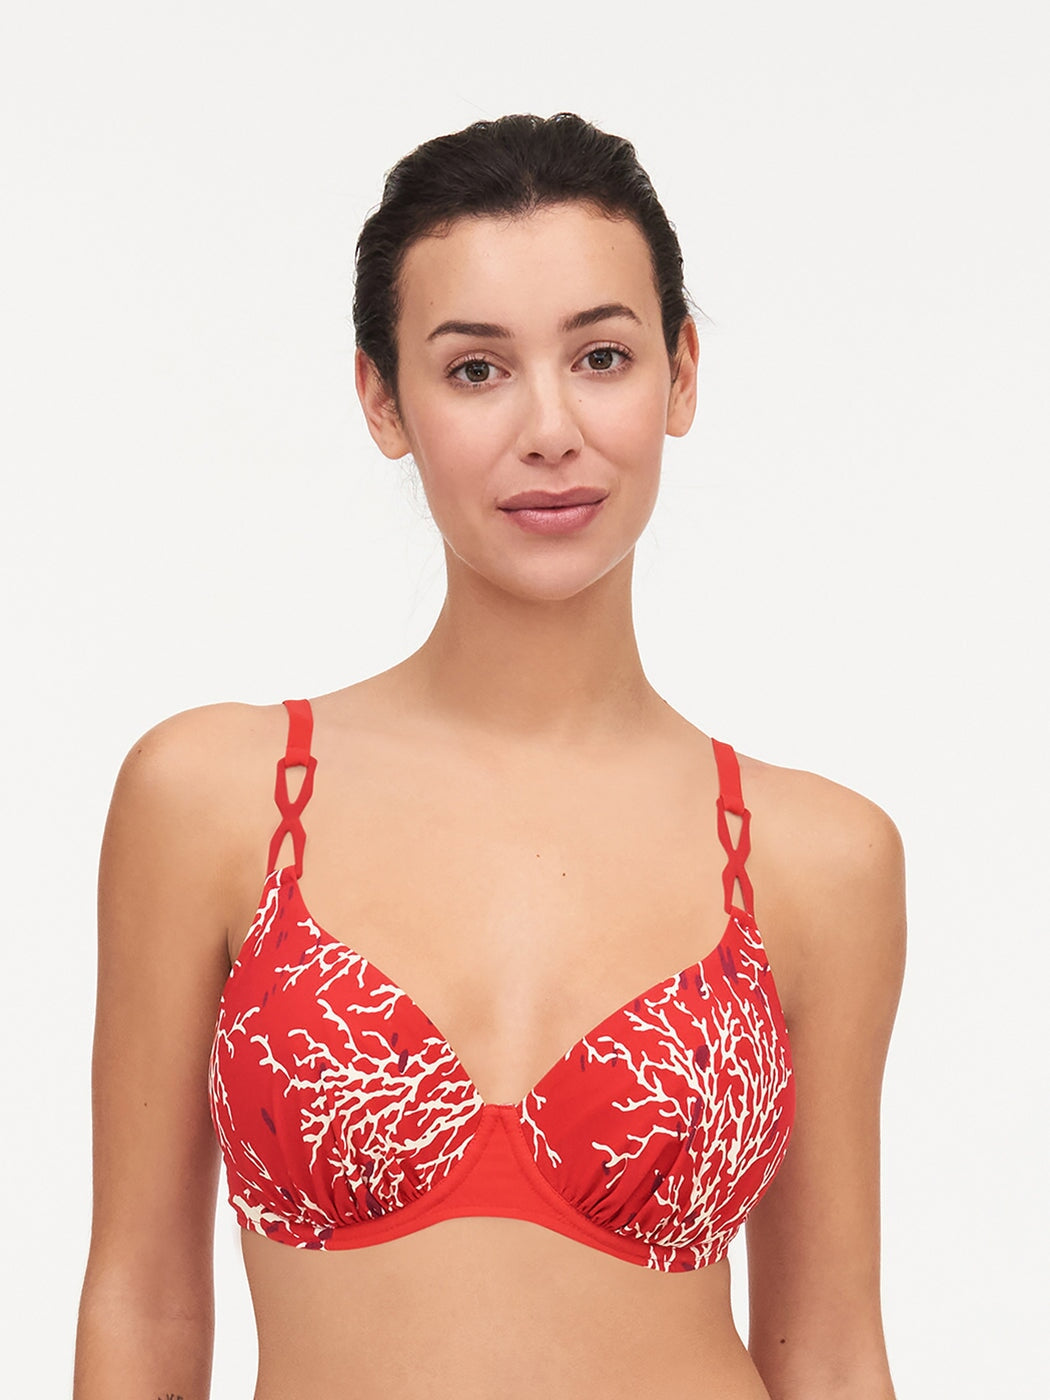 Chantelle Trajes de baño - Top de bikini con aros que cubre Atlantis Bikini de copa completa de coral rojo Chantelle Trajes de baño